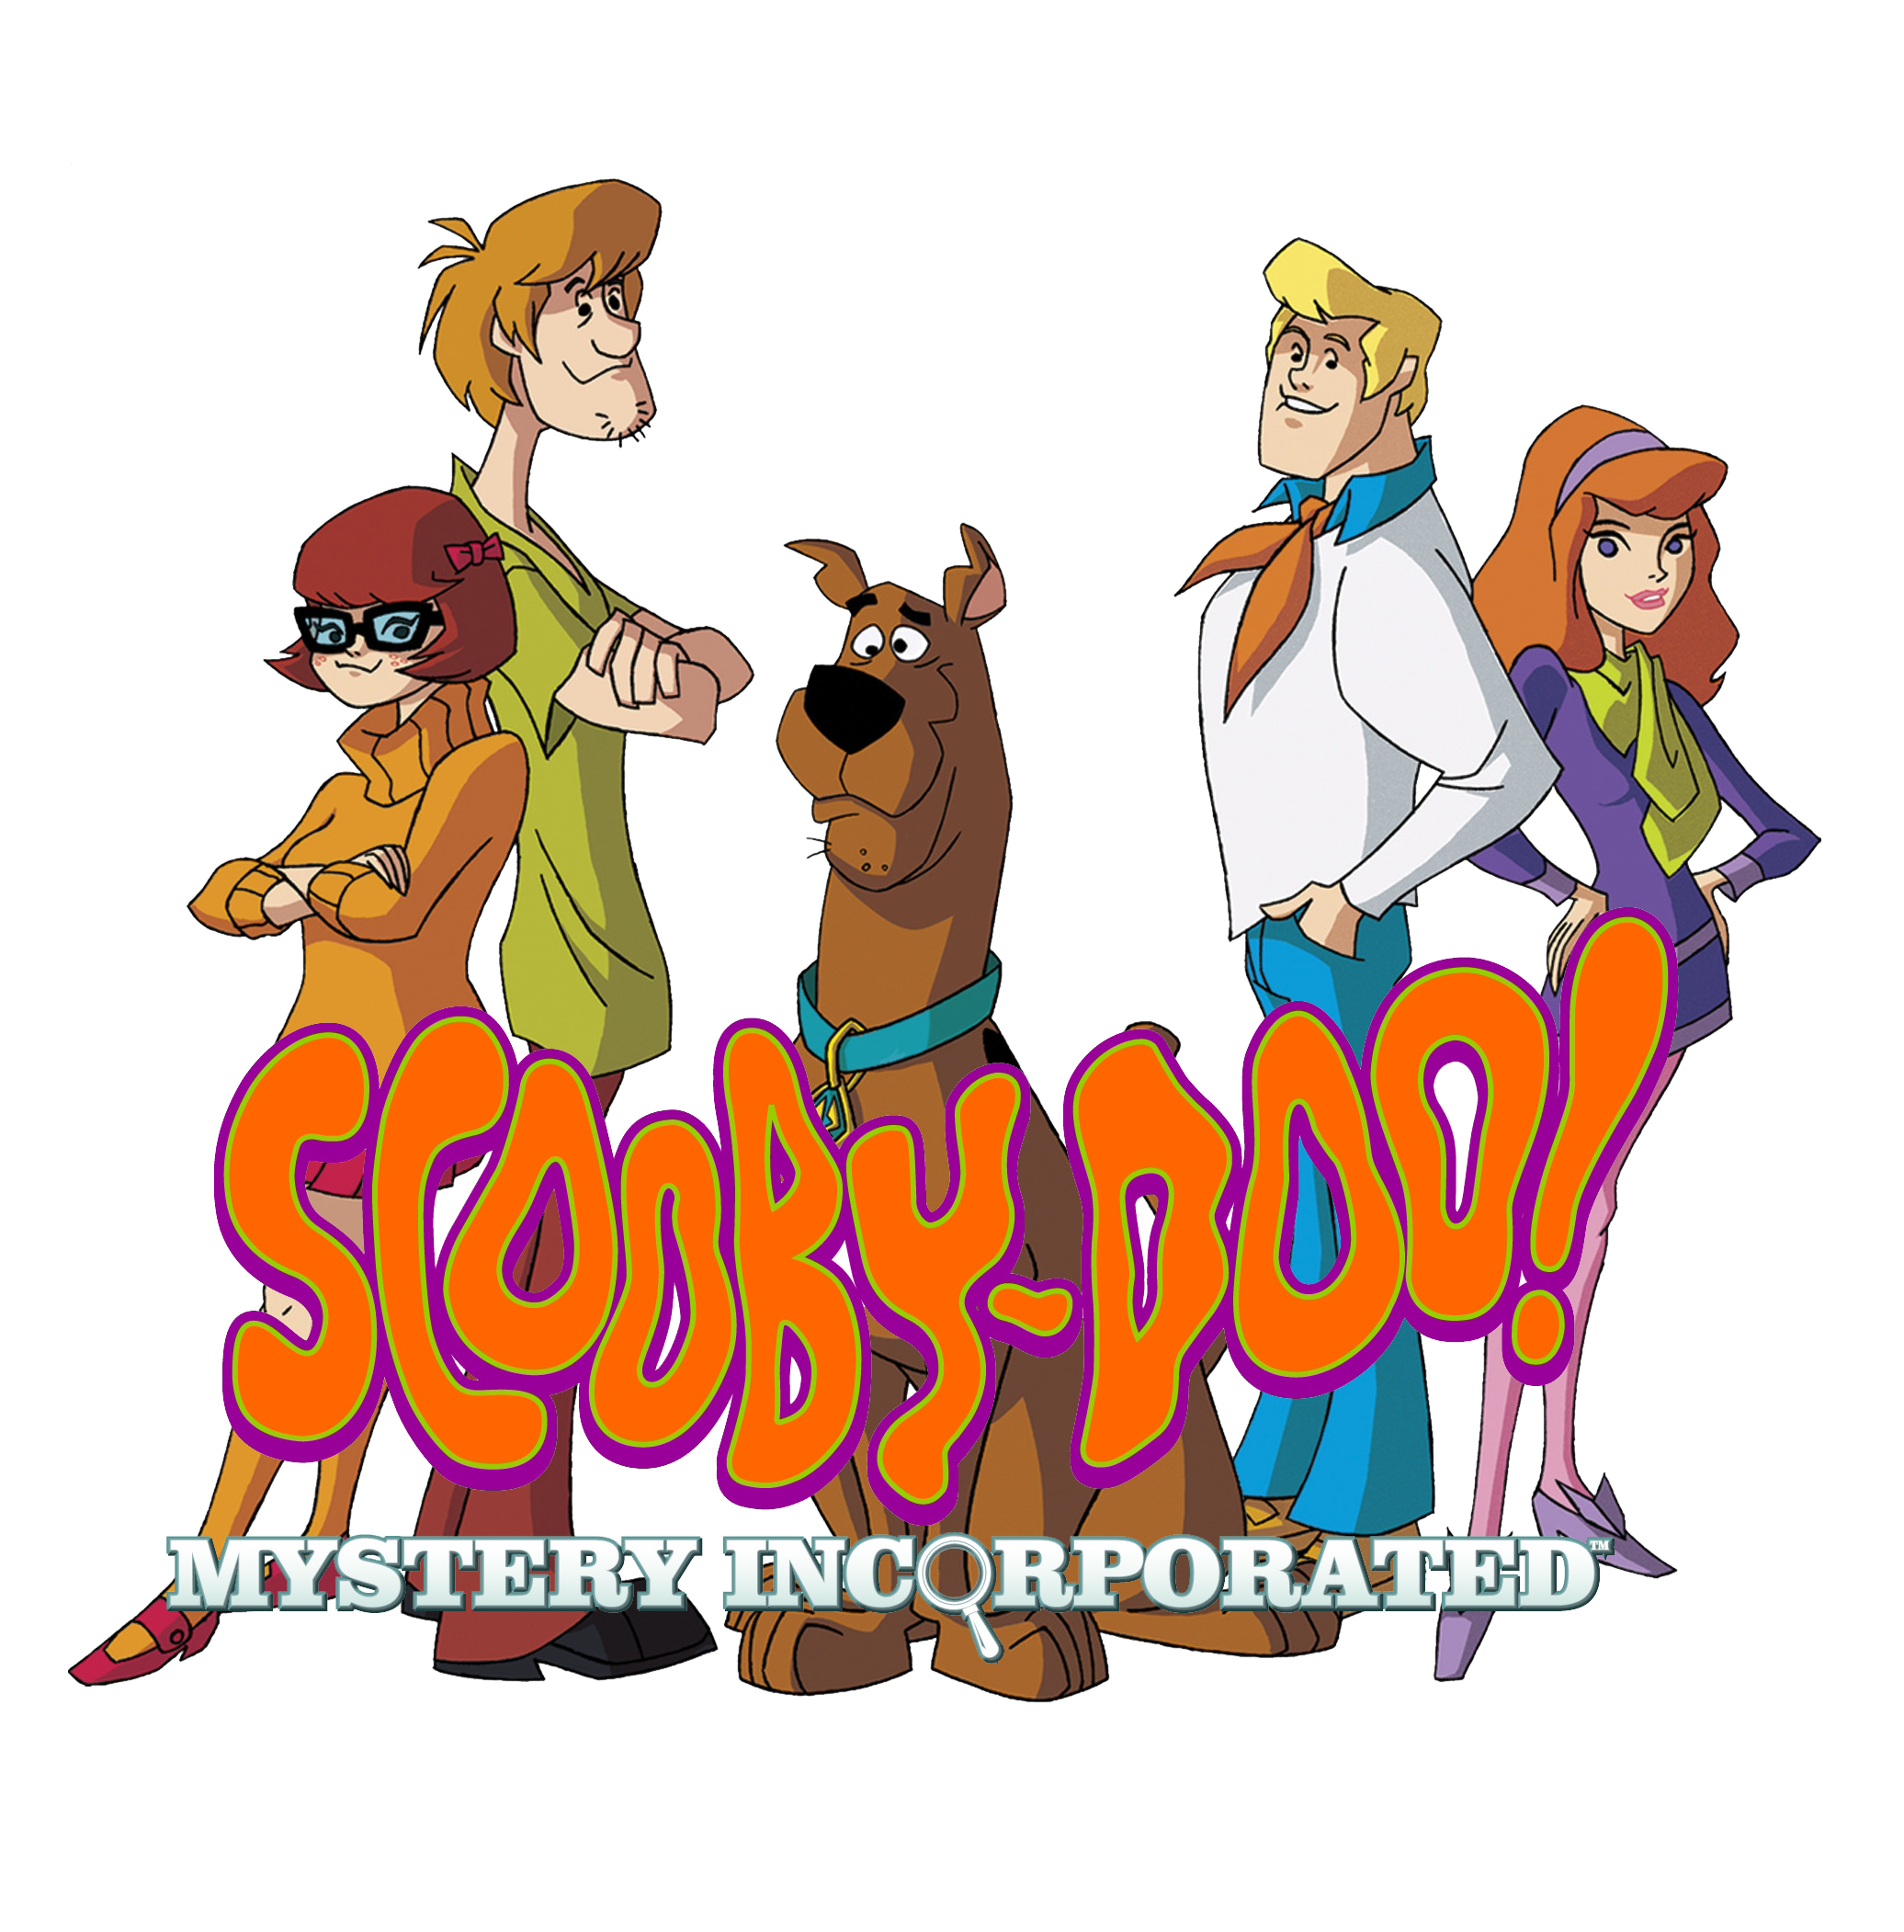 Scooby doo wiki